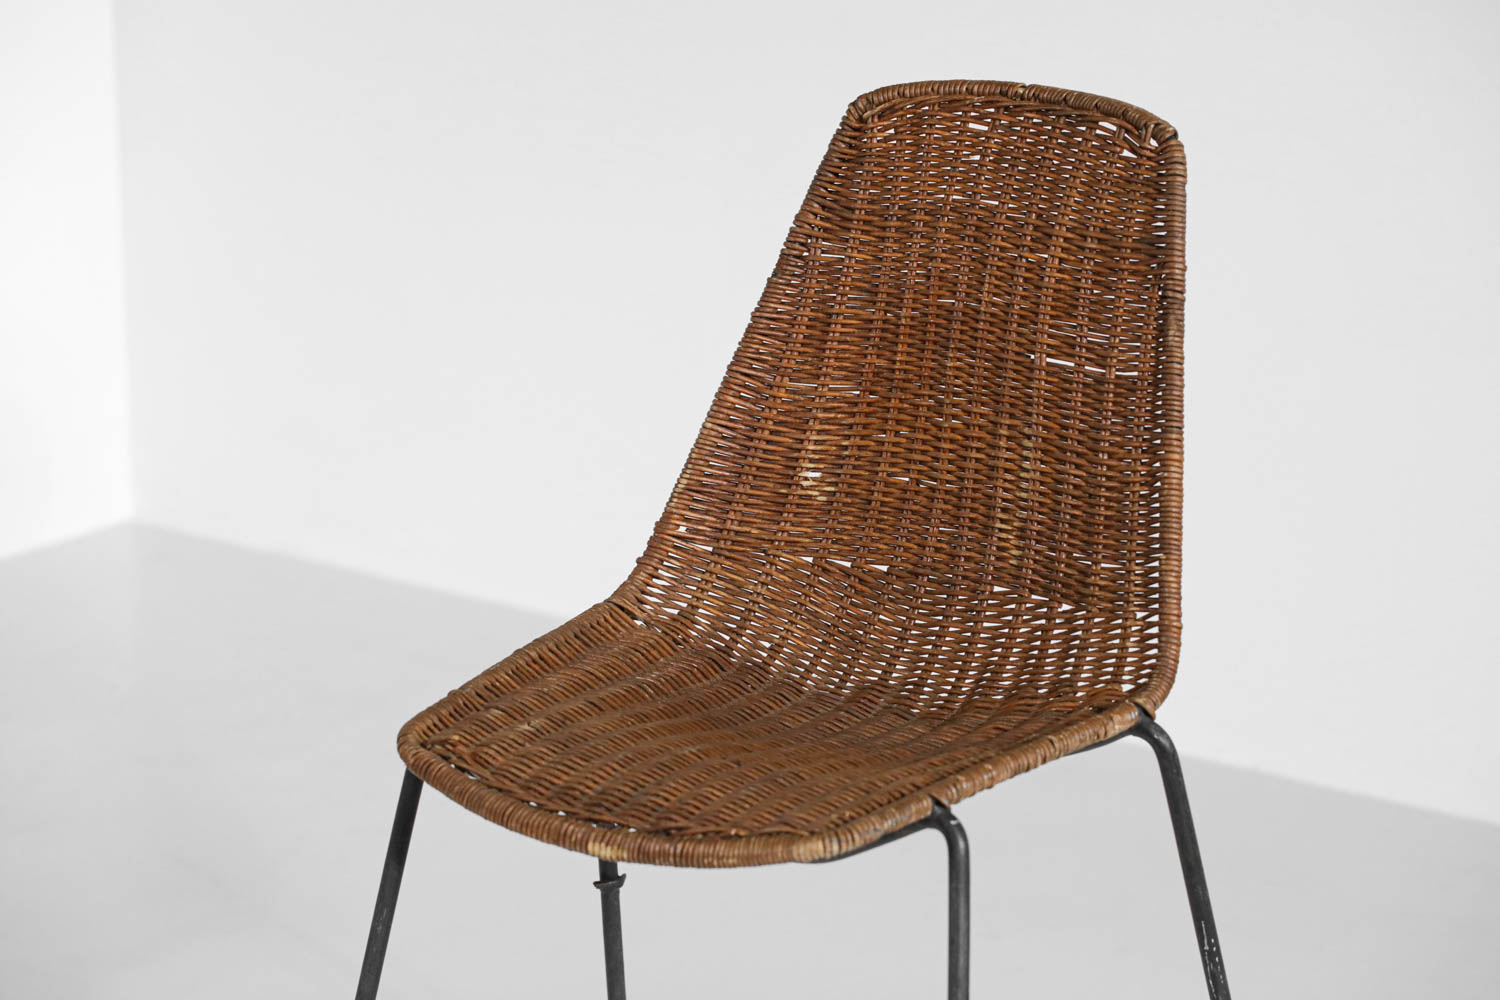 Paire de chaises rotin et métal Gian Franco Legler années 60 - G576